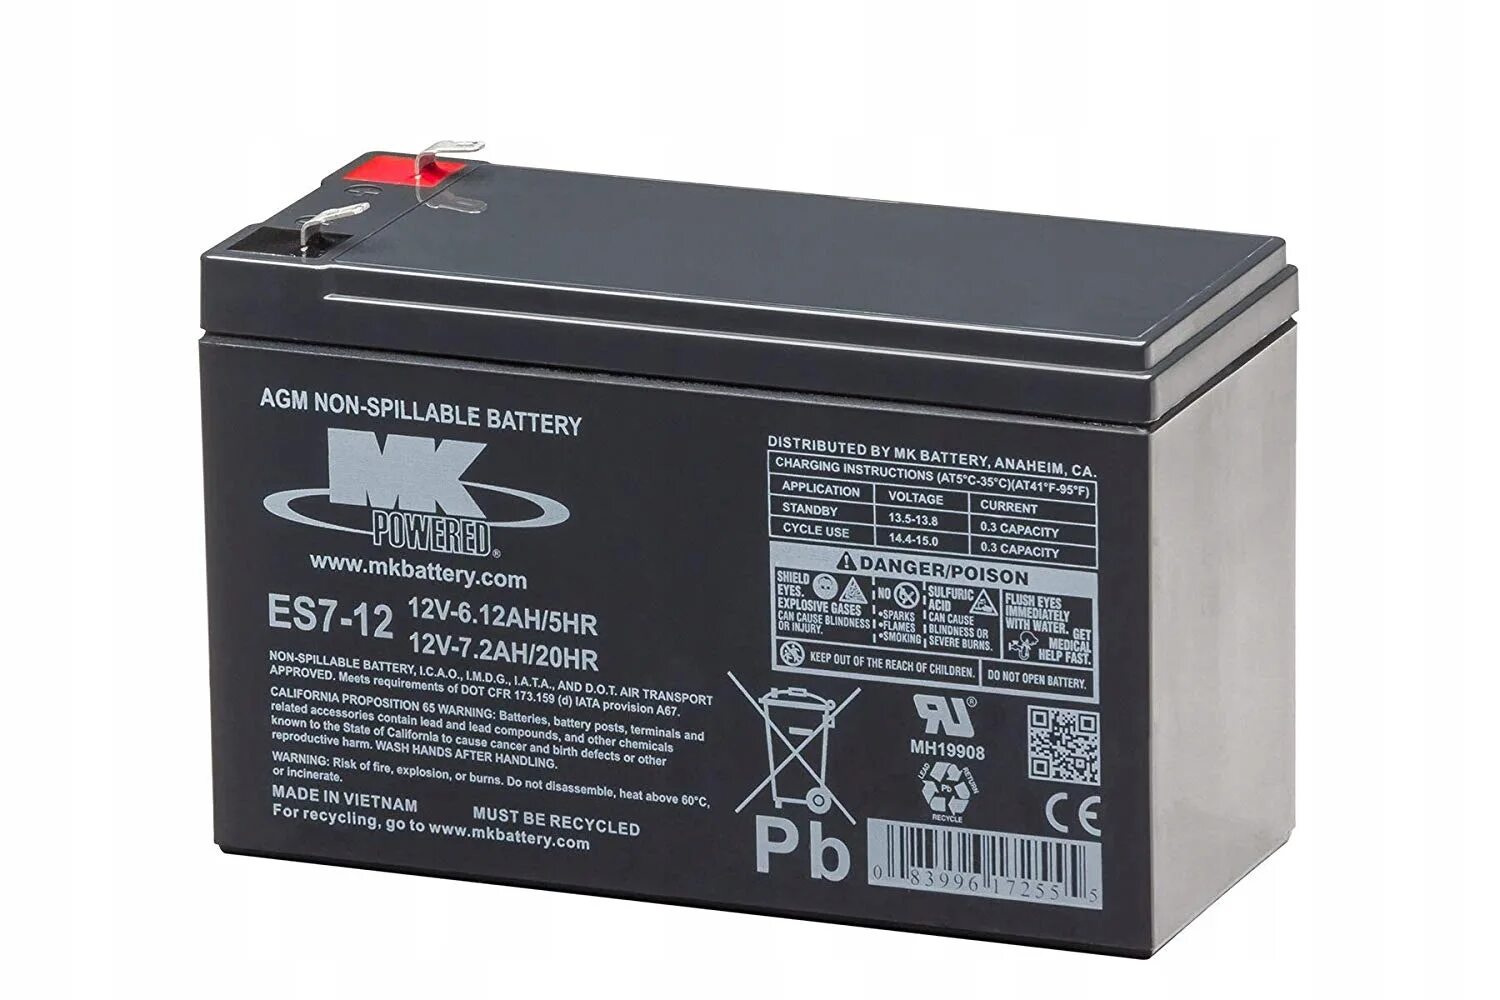 Аккумулятор 7 ампер часов. Ms7-12 12v7ah/20hr. Аккумуляторная батарея DTS 1207 - Sealed lead acid Battery-12v 7ah. Аккумулятор 12v 7ah гелевый. Аккумулятор 12v 7.2Ah djw12-7.2.